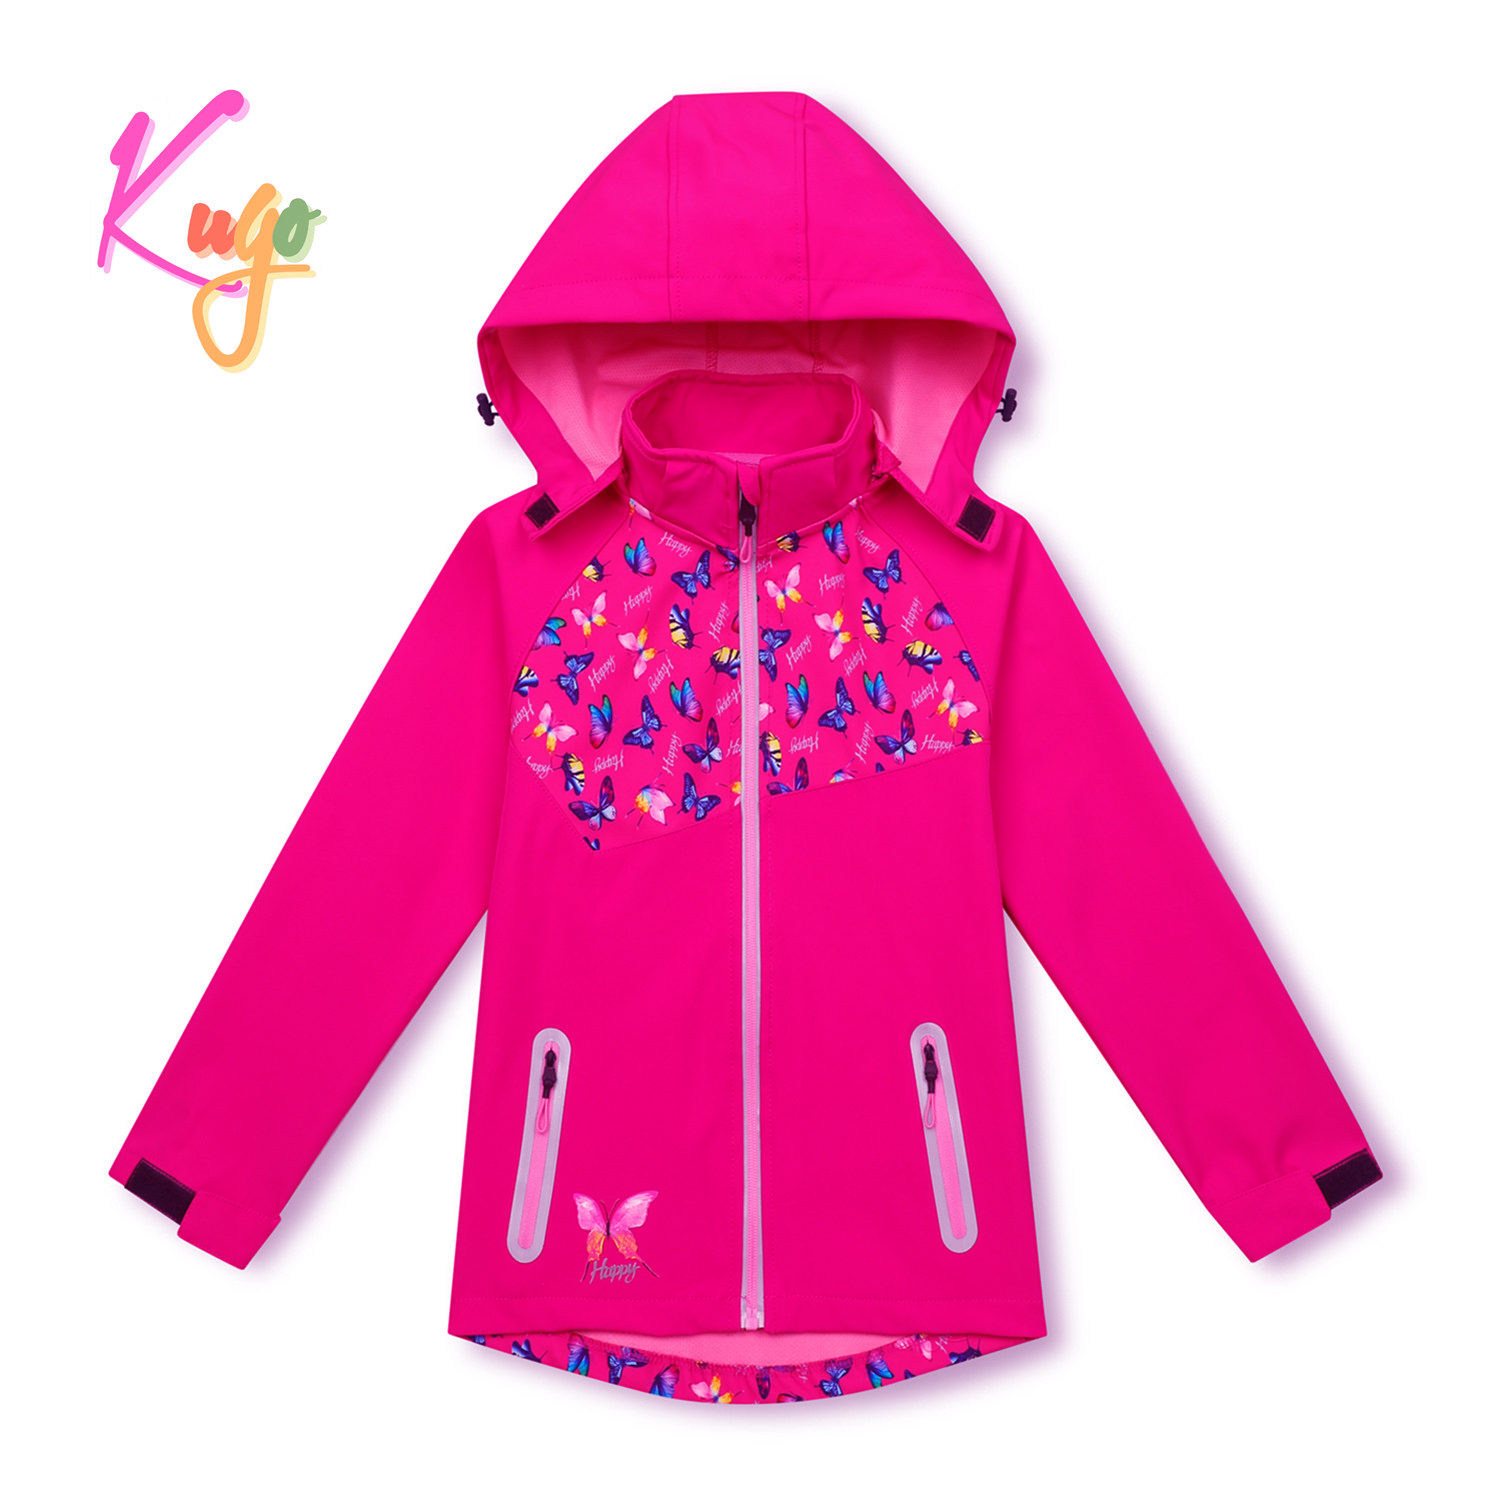 Dívčí softshellová bunda - KUGO HK3123, růžová Barva: Růžová, Velikost: 110